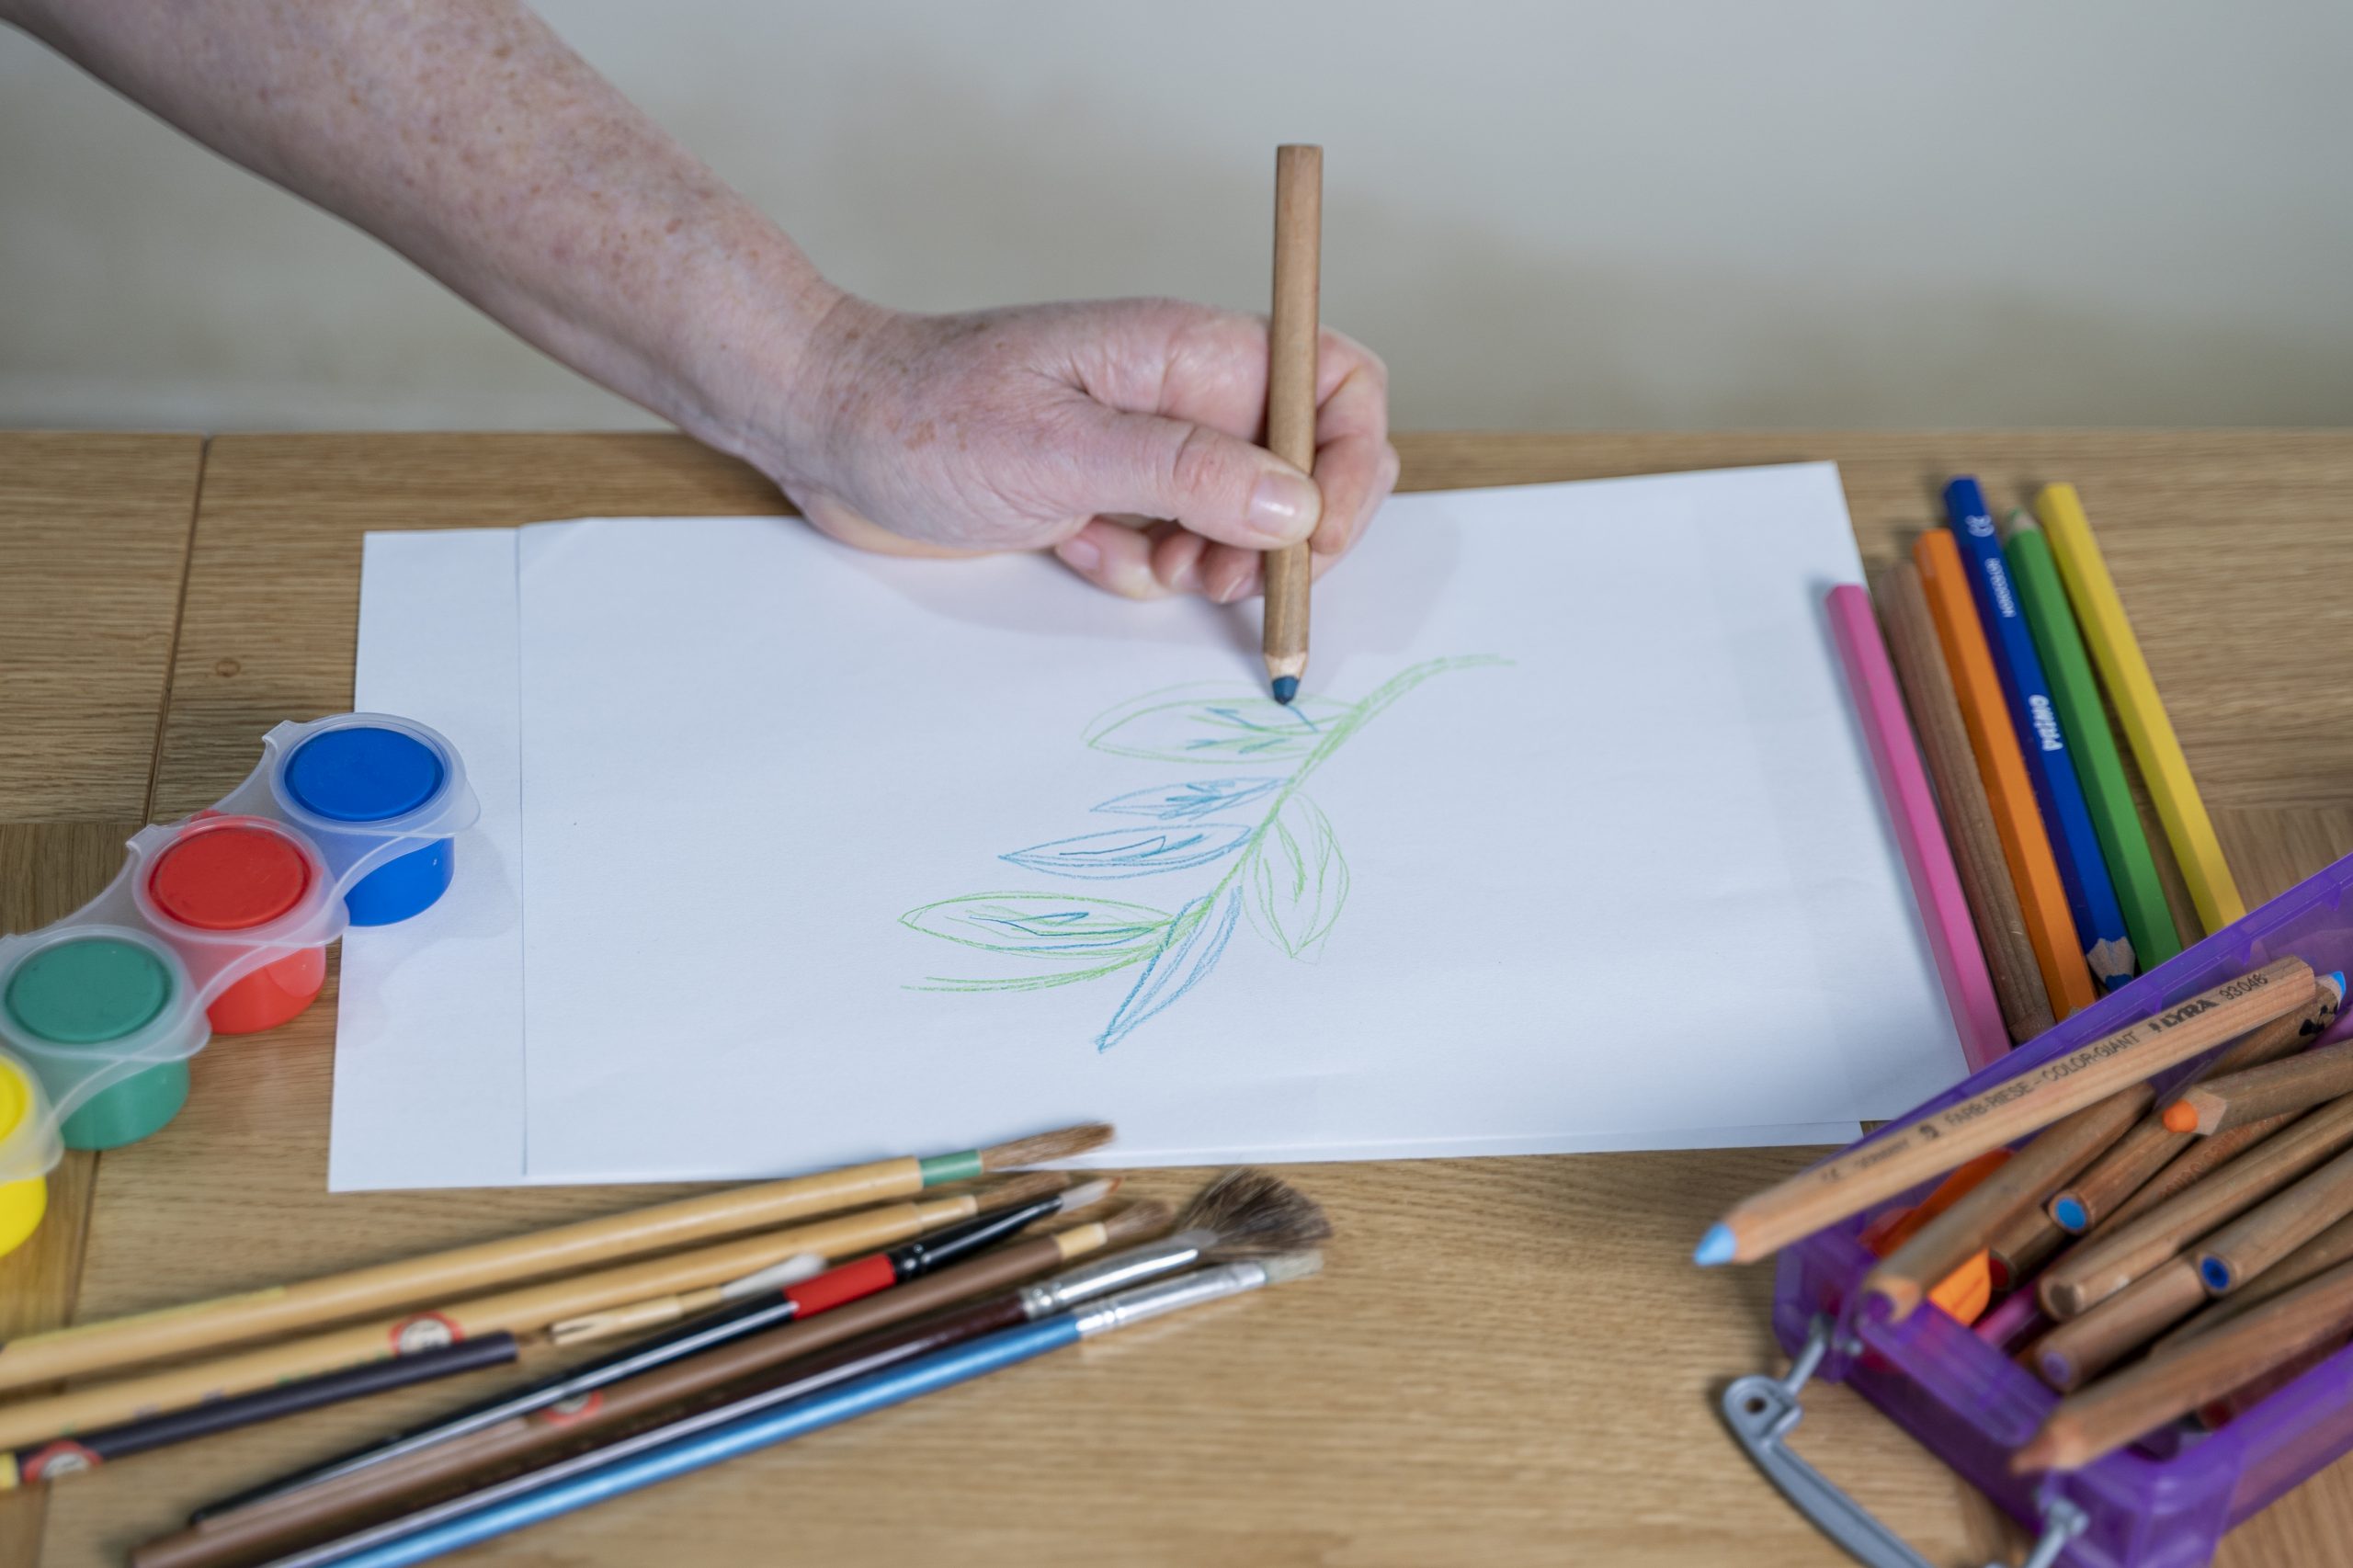 .יד אוחזת עיפרון צבעוני ומציירת ענף עם עלים על גבי דף נייר לבן. הדף מונח על שולחן ולצידו צבעי גואש, מכחולים וצבעי עיפרון נוספים